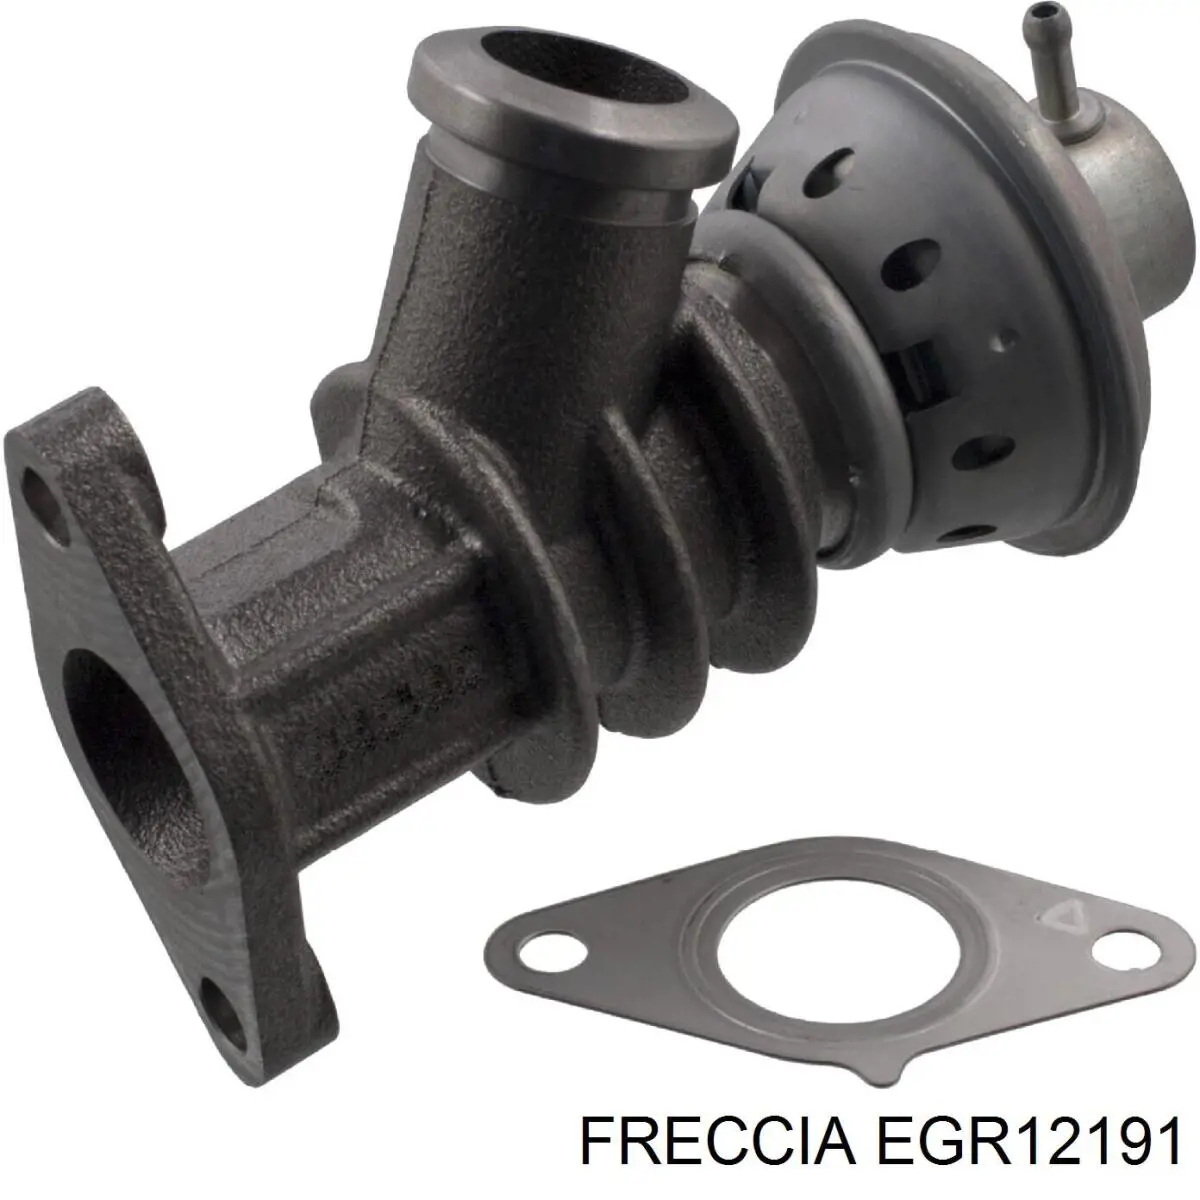 EGR12191 Freccia клапан егр